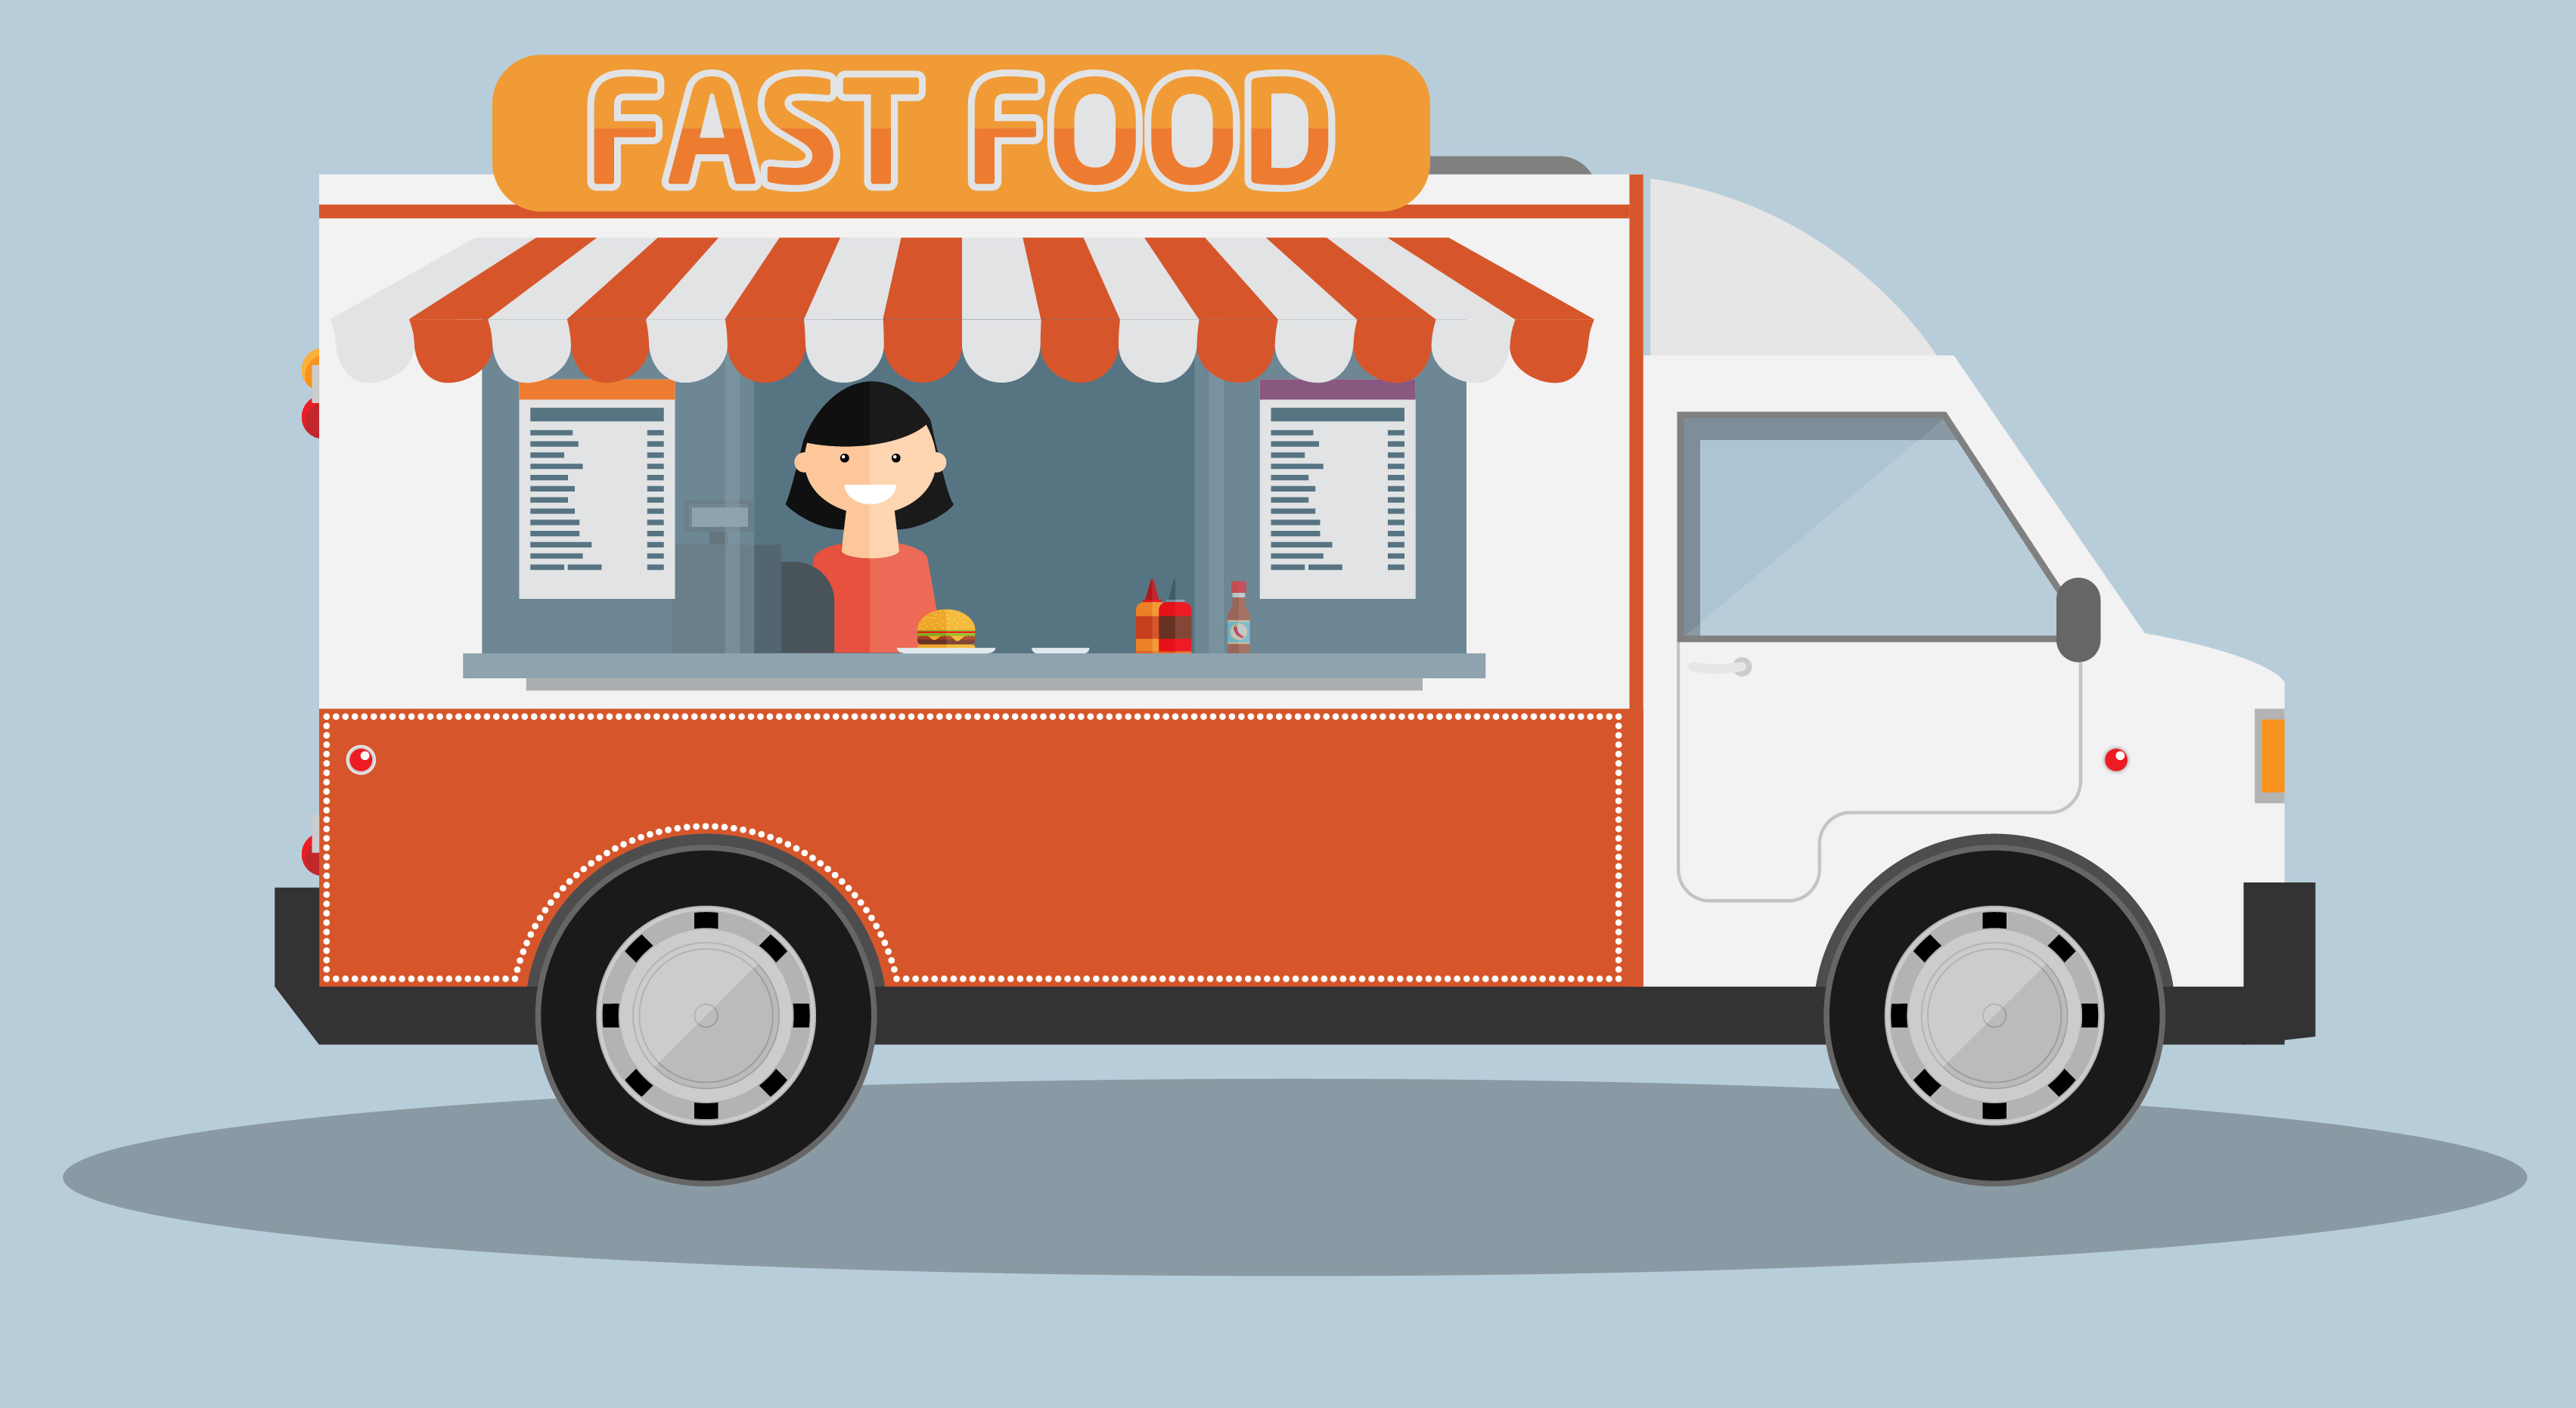 ธุรกิจ Food Truck กลยุทธ์การตลาดติดล้อมาแรงแห่งปี